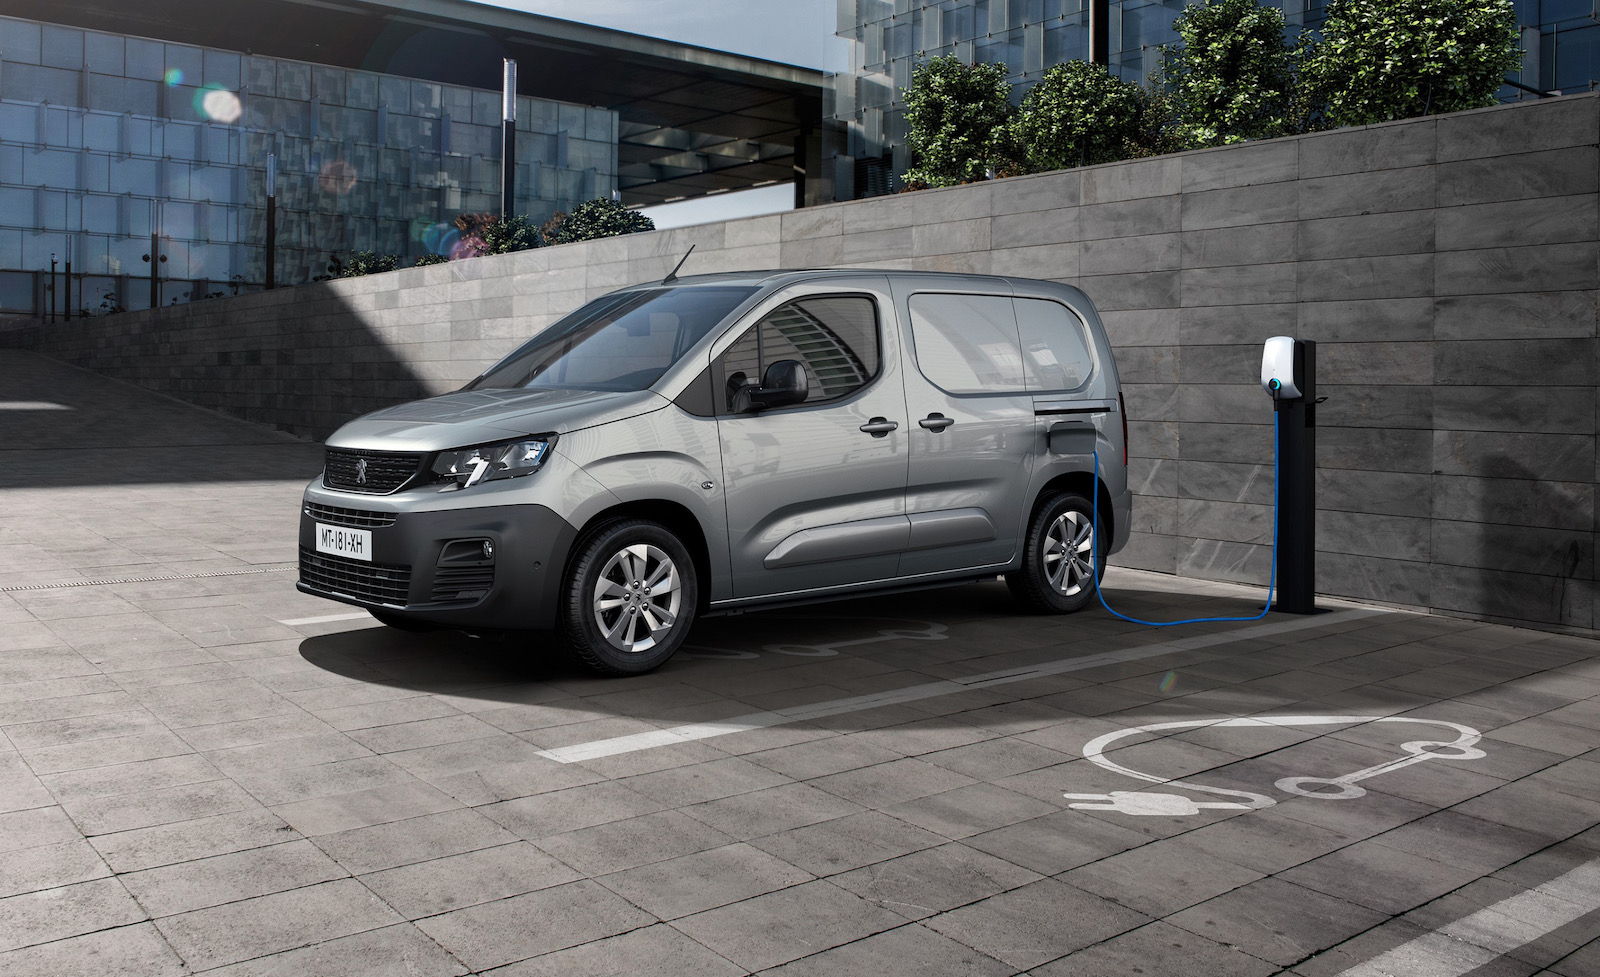 Peugeot e-Partner fully electric van confirmed for Australia